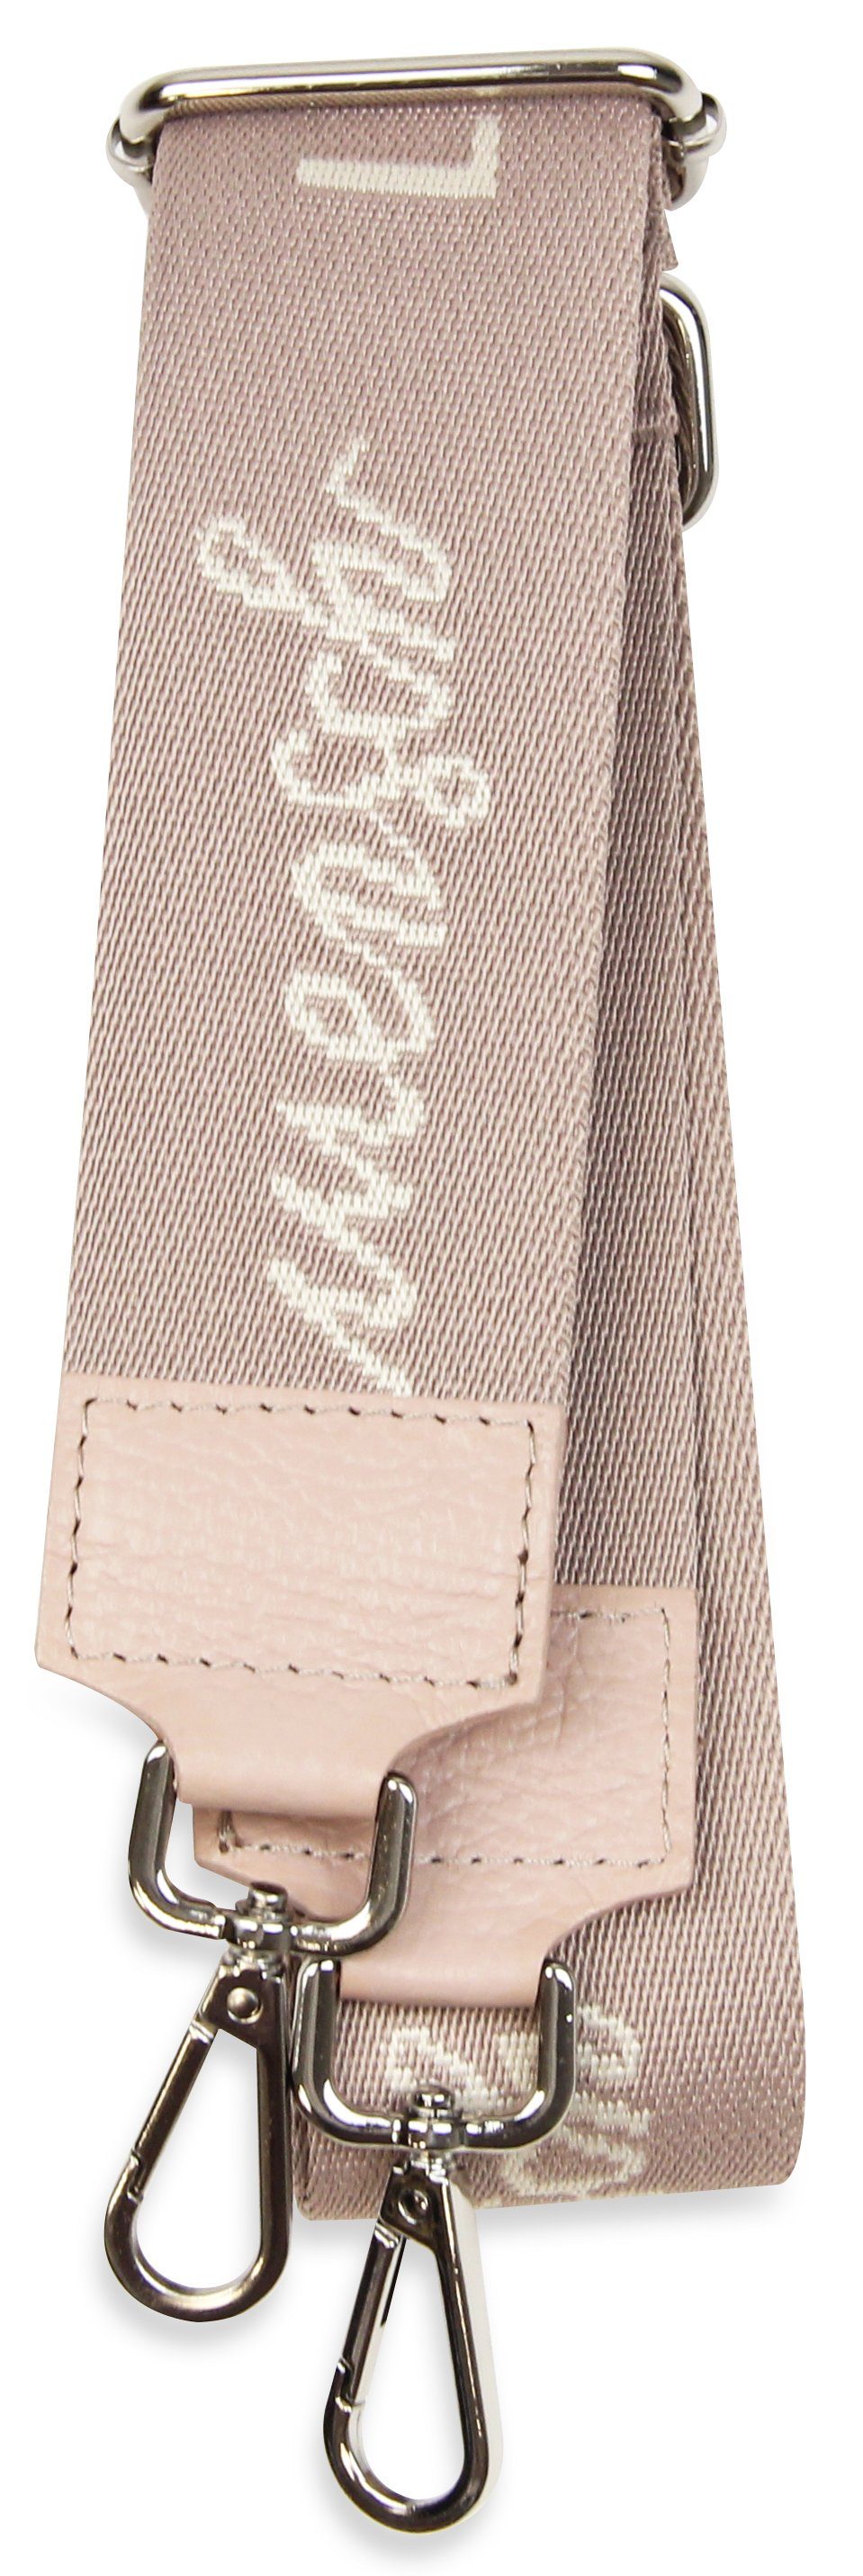 5cm breiter IN Gurt, Schultergurt verstellbarer Taschen, Muster: für Frentree MADE Lieblingsmensch Rosa Schulterriemen ITALY,